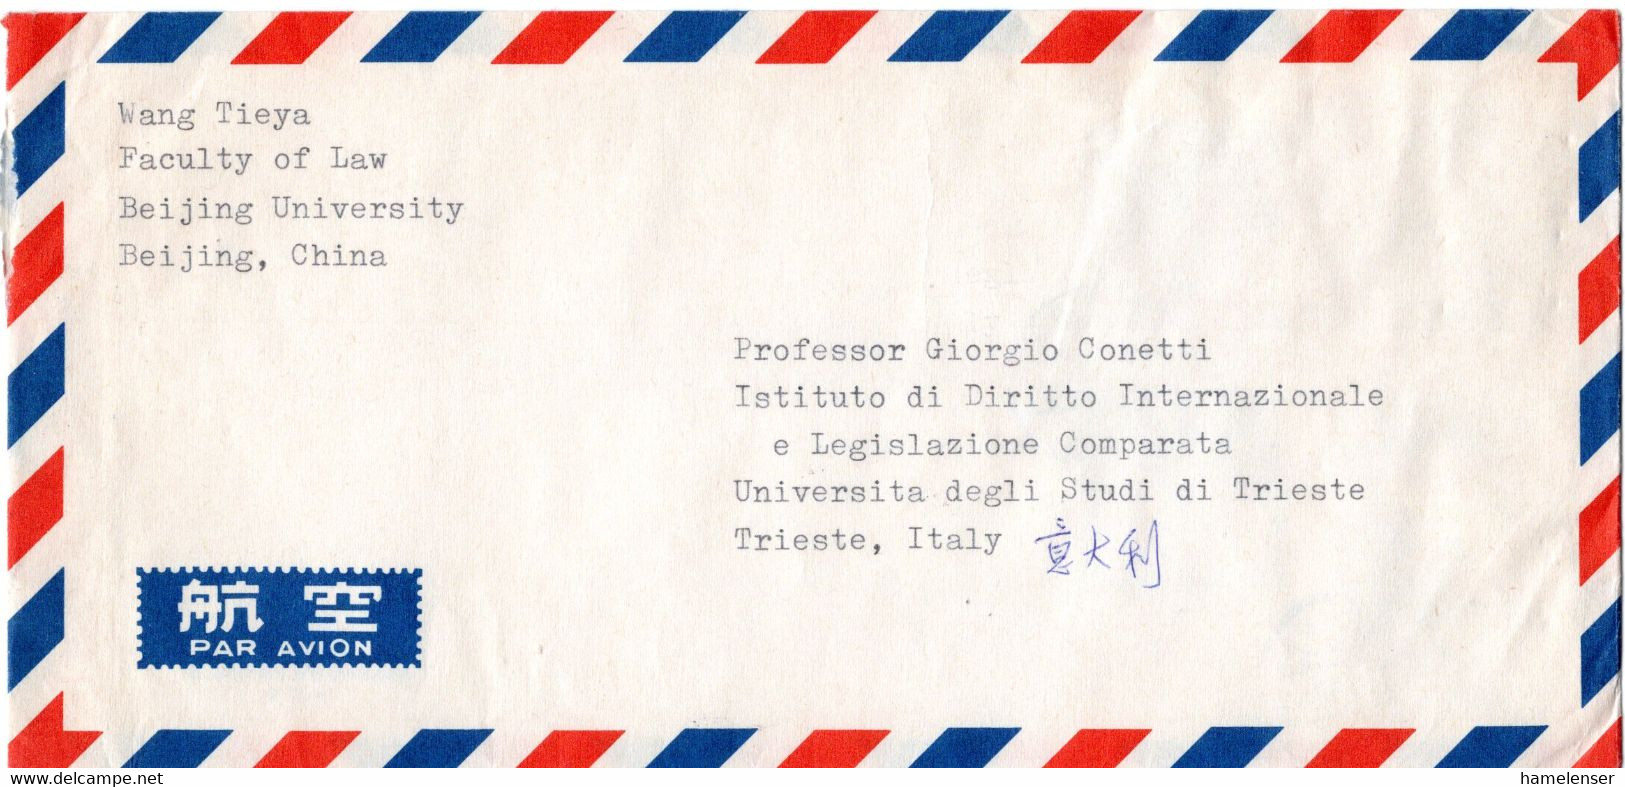 L34322 - VR China - 1981 - 2@40f Wirtschaft MiF A LpBf BEIJING -> Italien - Briefe U. Dokumente